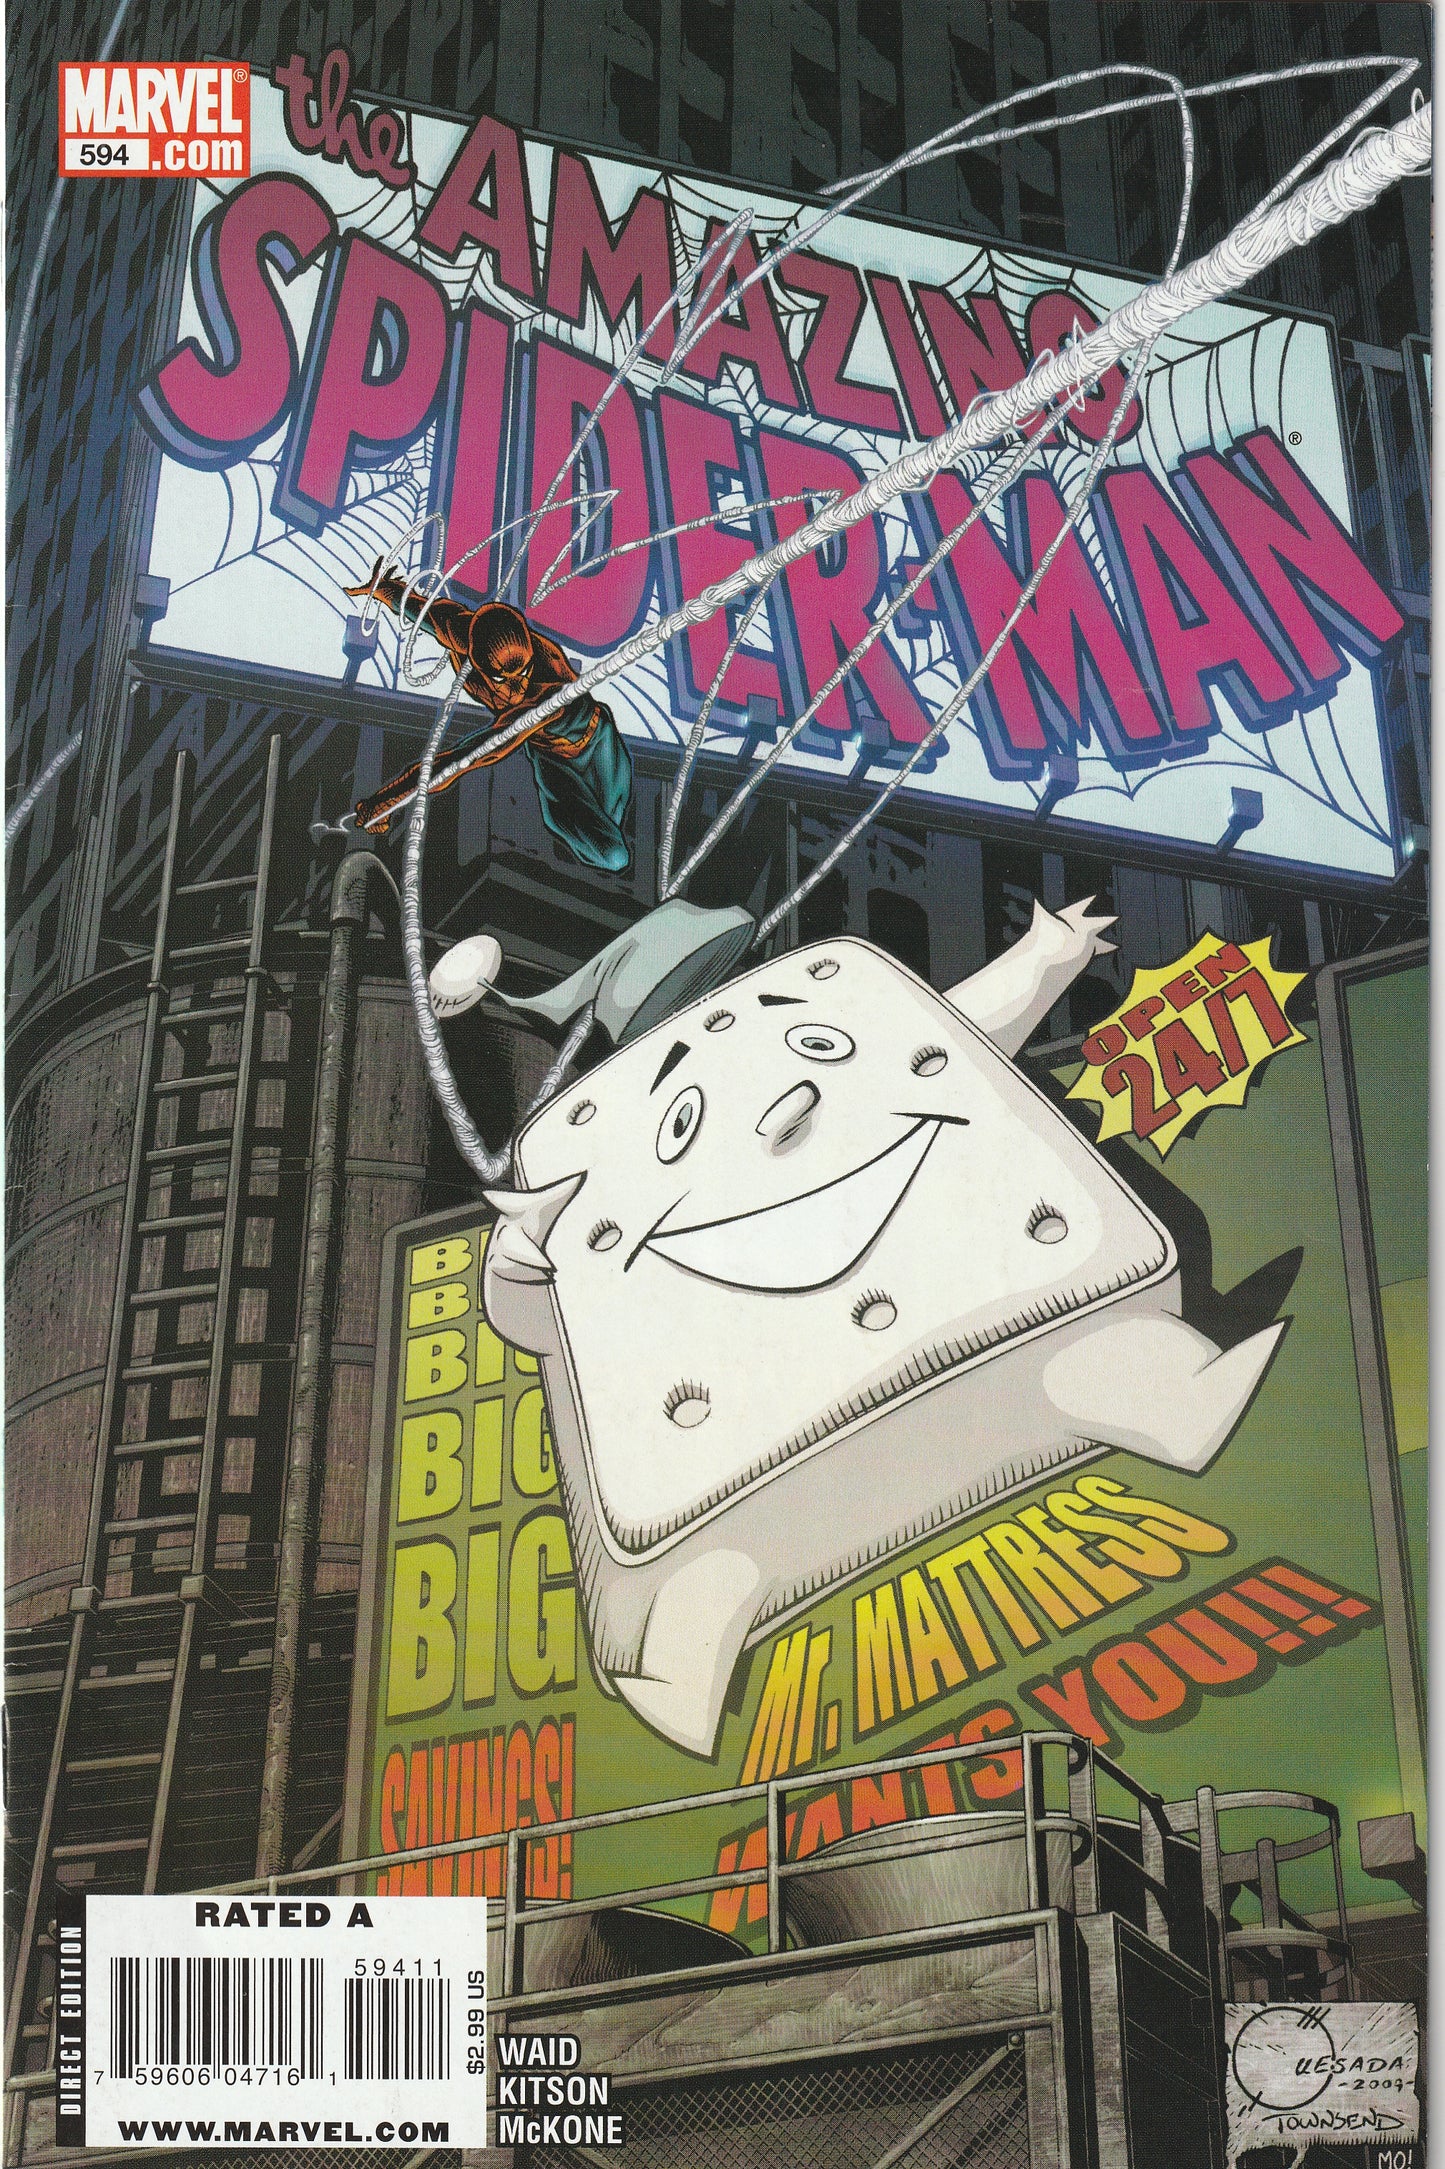 Amazing Spider-Man #594 (2009) - Quesada Regular Cover